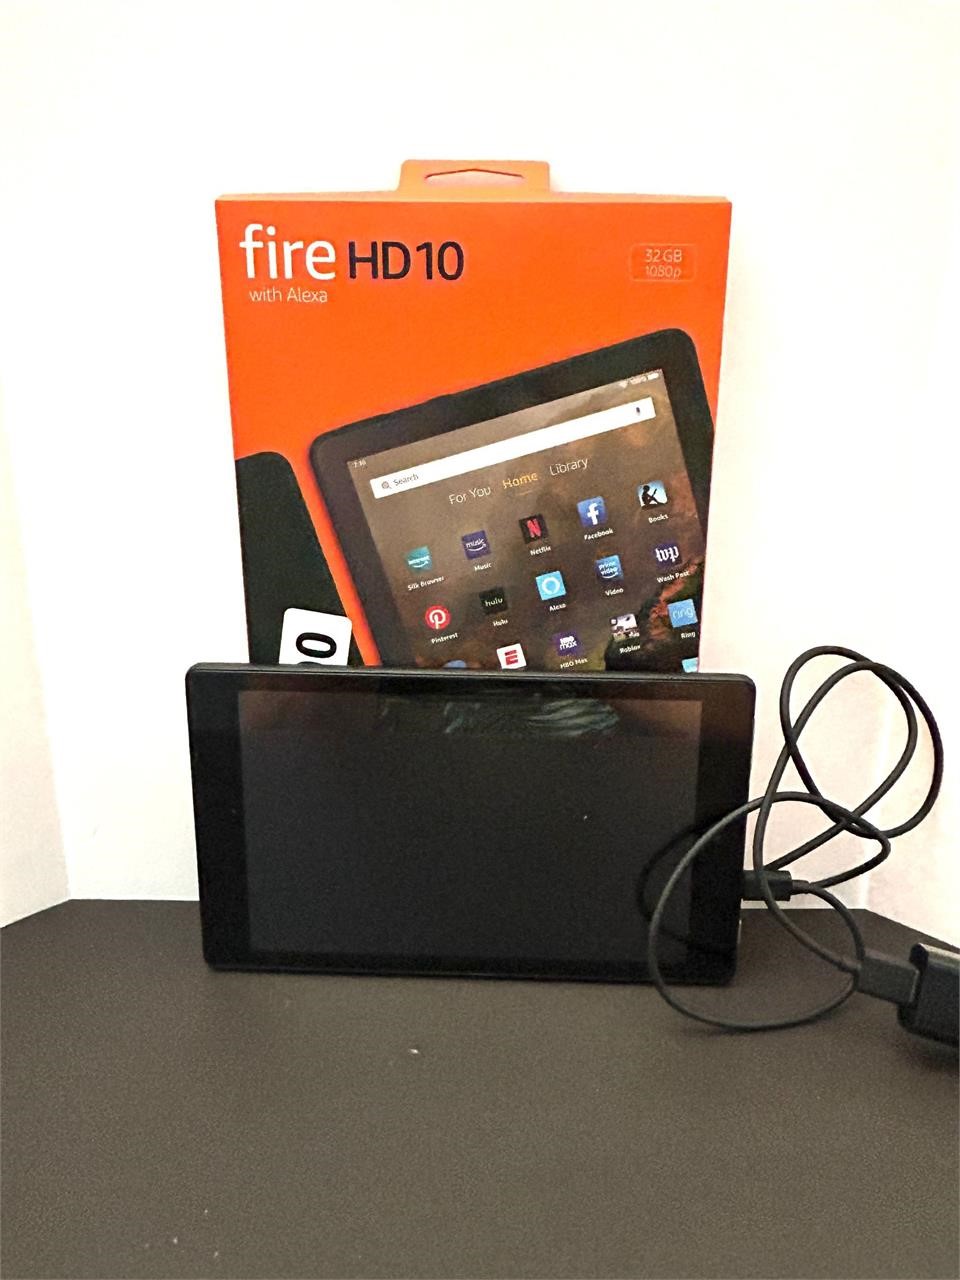 Fire HD 10 w ALexa 32gb1080p